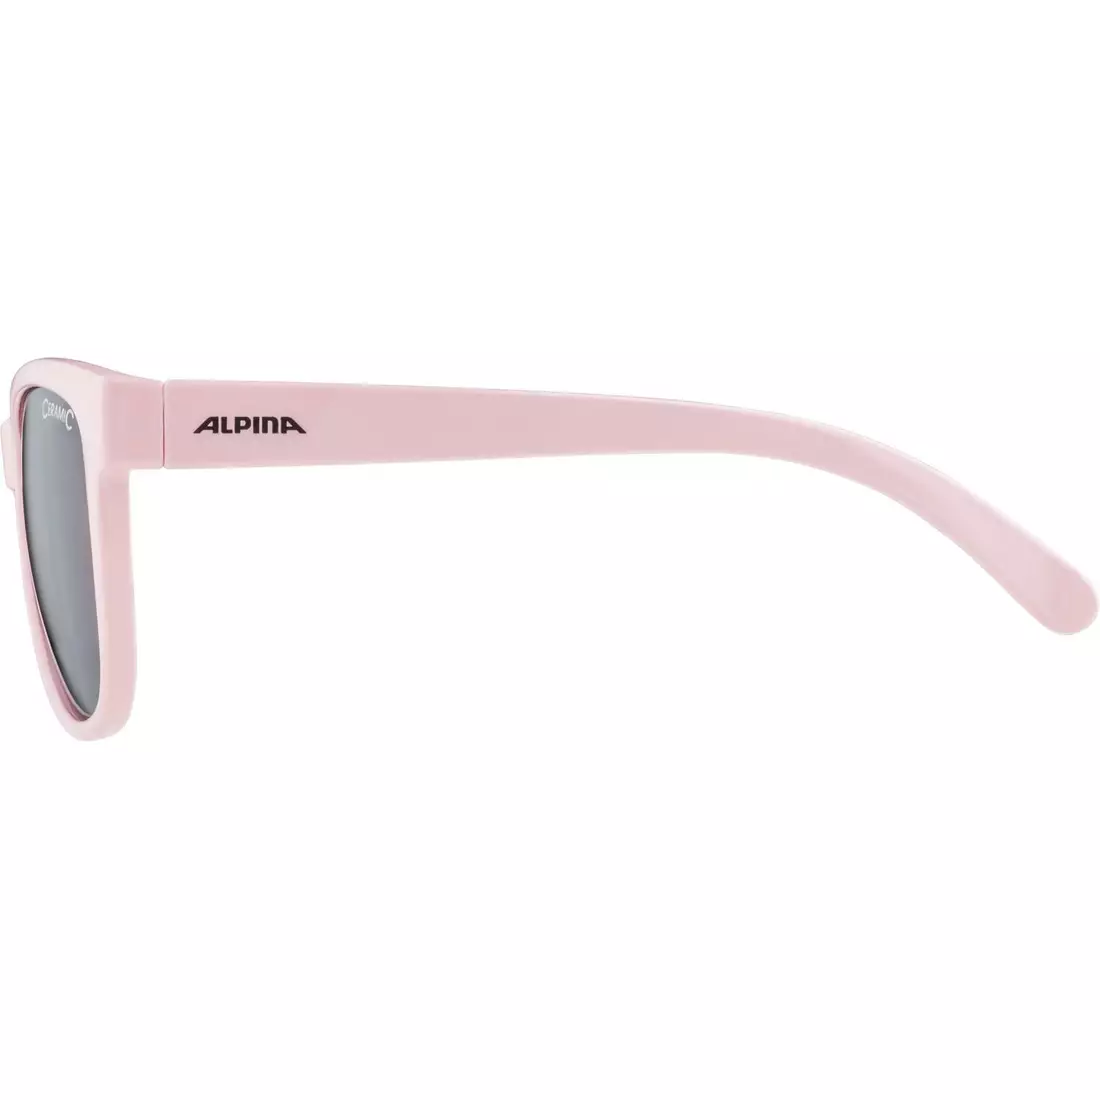 ALPINA JUNIOR LUZY cyklistické/sportovní brýle, rose gloss